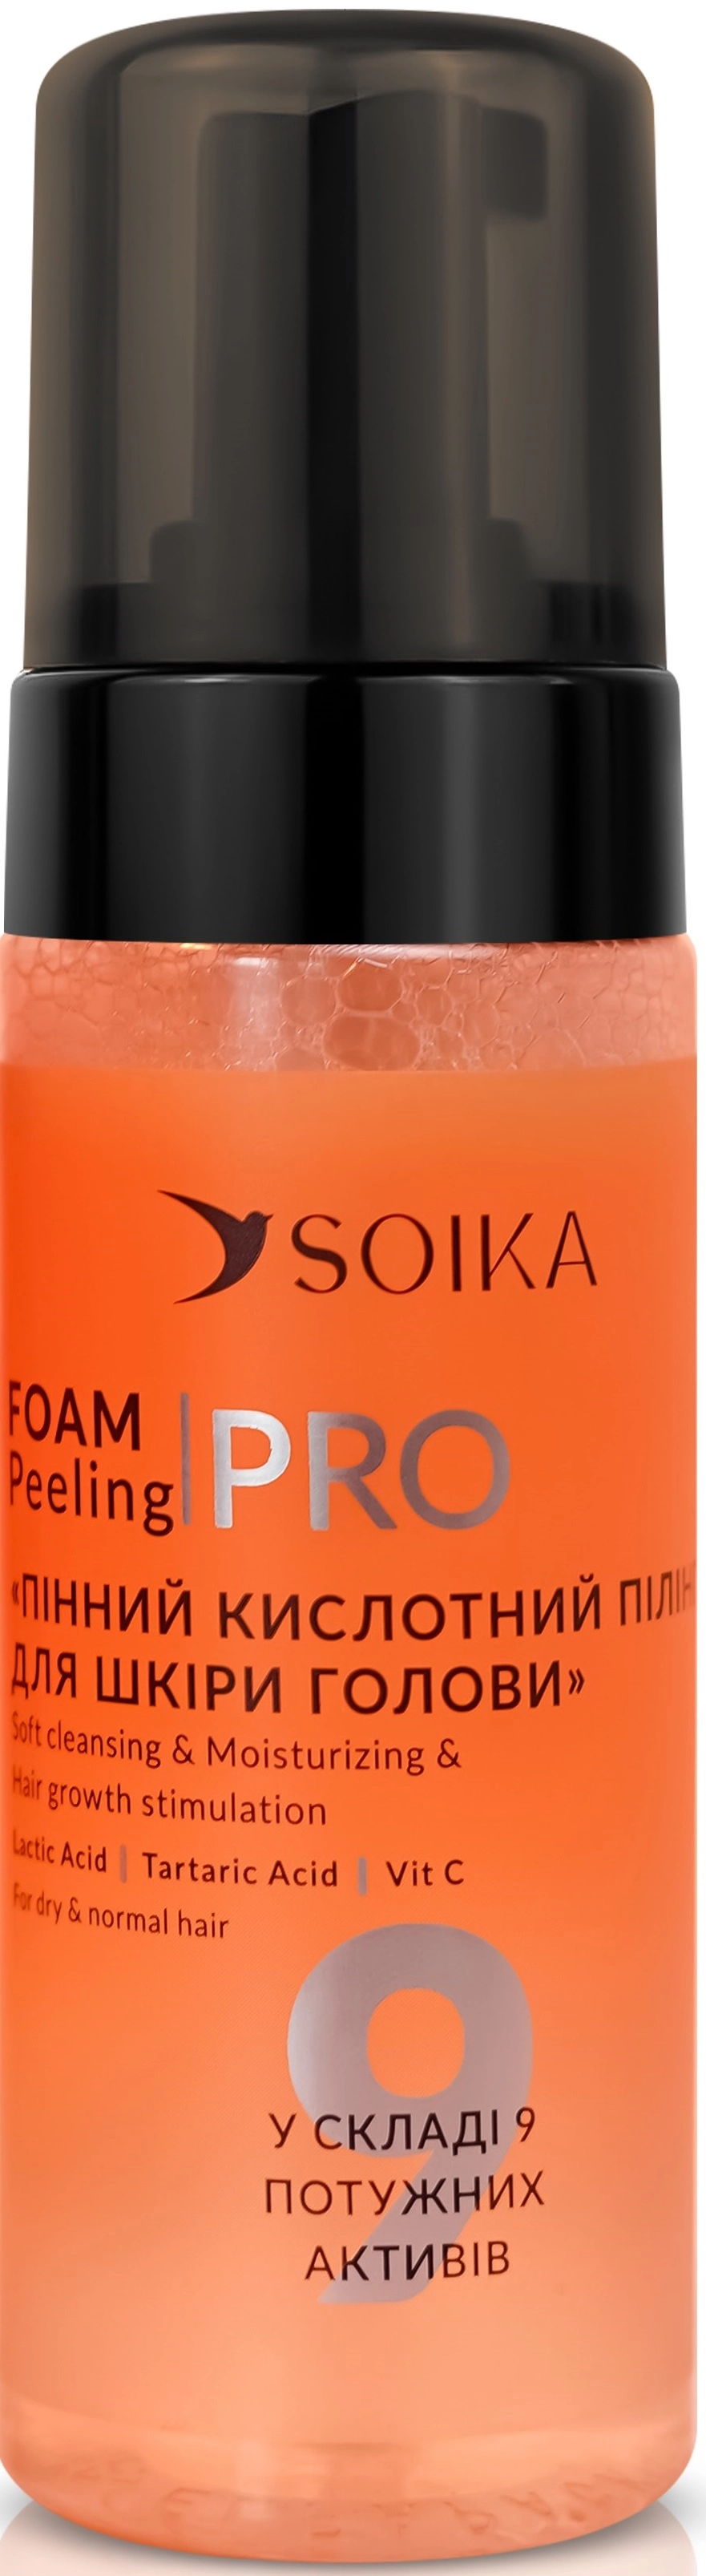 Пилинг пенный для кожи головы с молочной кислотой "Мягкая очистка и увлажнение" - Soika Foam Peeling PRO For Dry & Normal Hair, 150 мл - фото N1